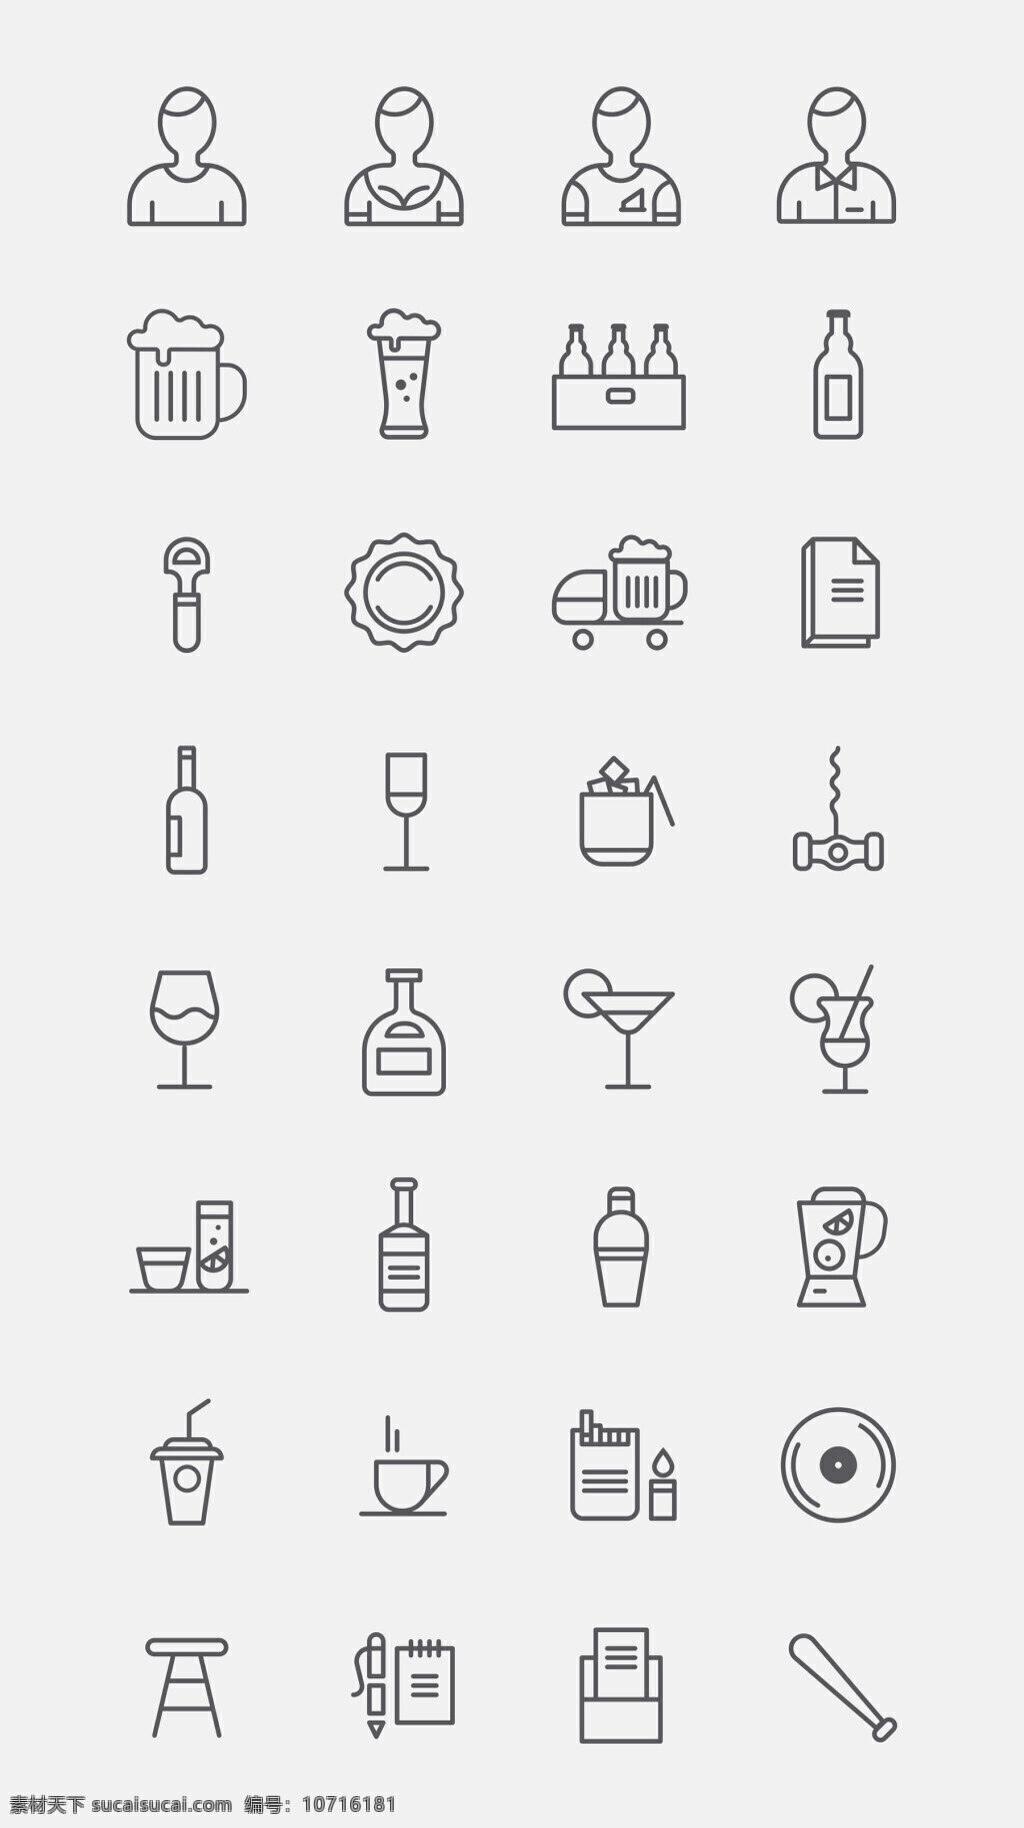 酒吧图标 创意图标 图标下载 图标设计 表情图标 迷你图标 通用图标 网页图标 icon 酒杯 饮料 服务员